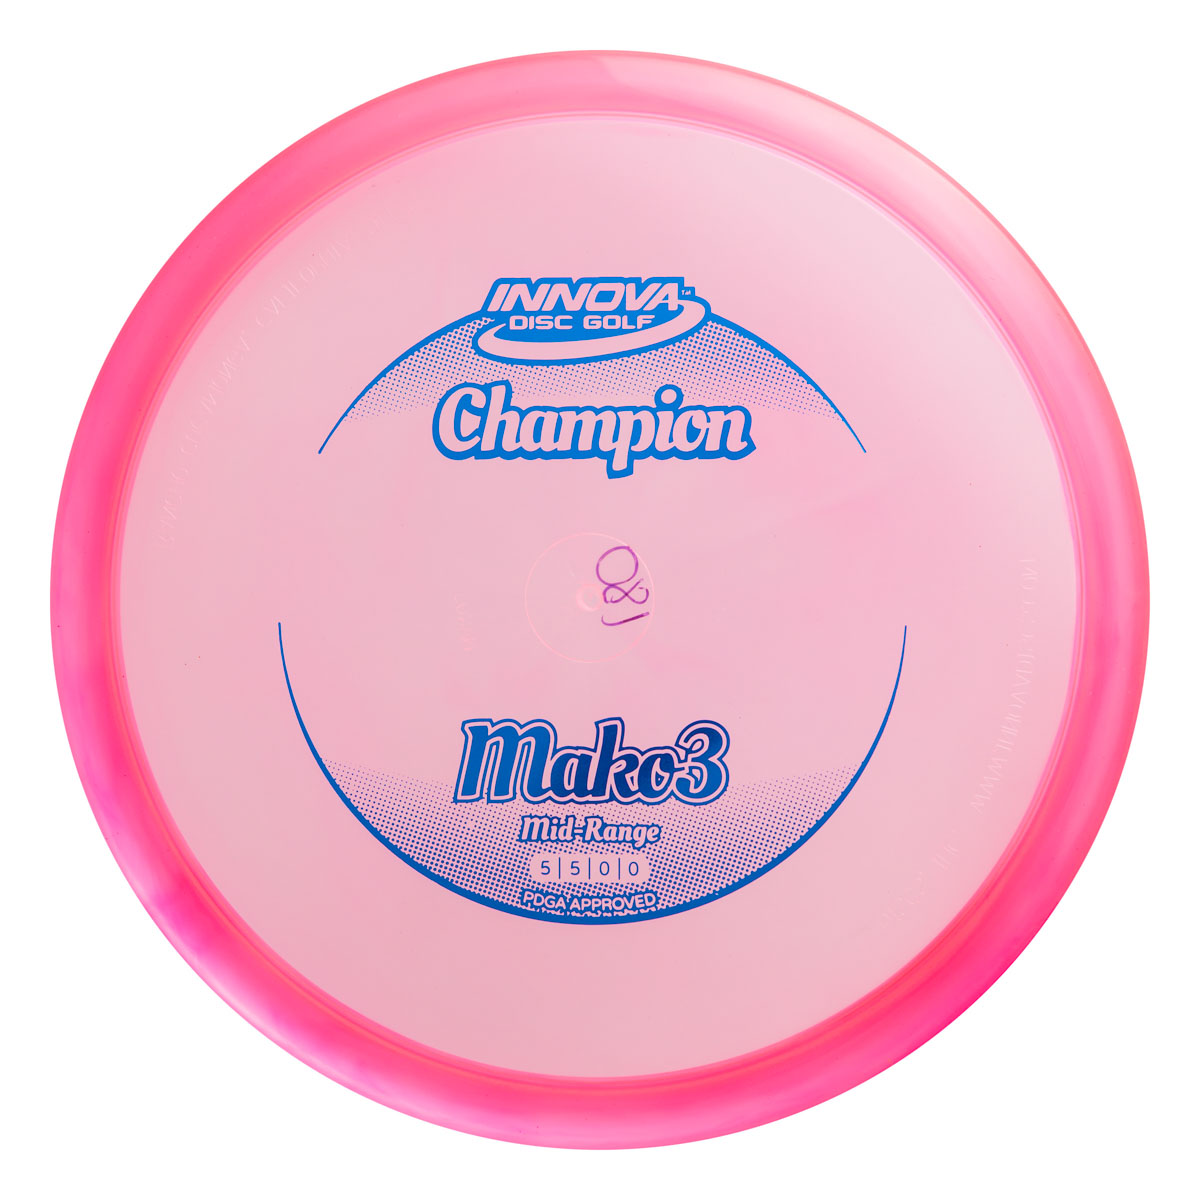 Innova Champion Mako3 midrange